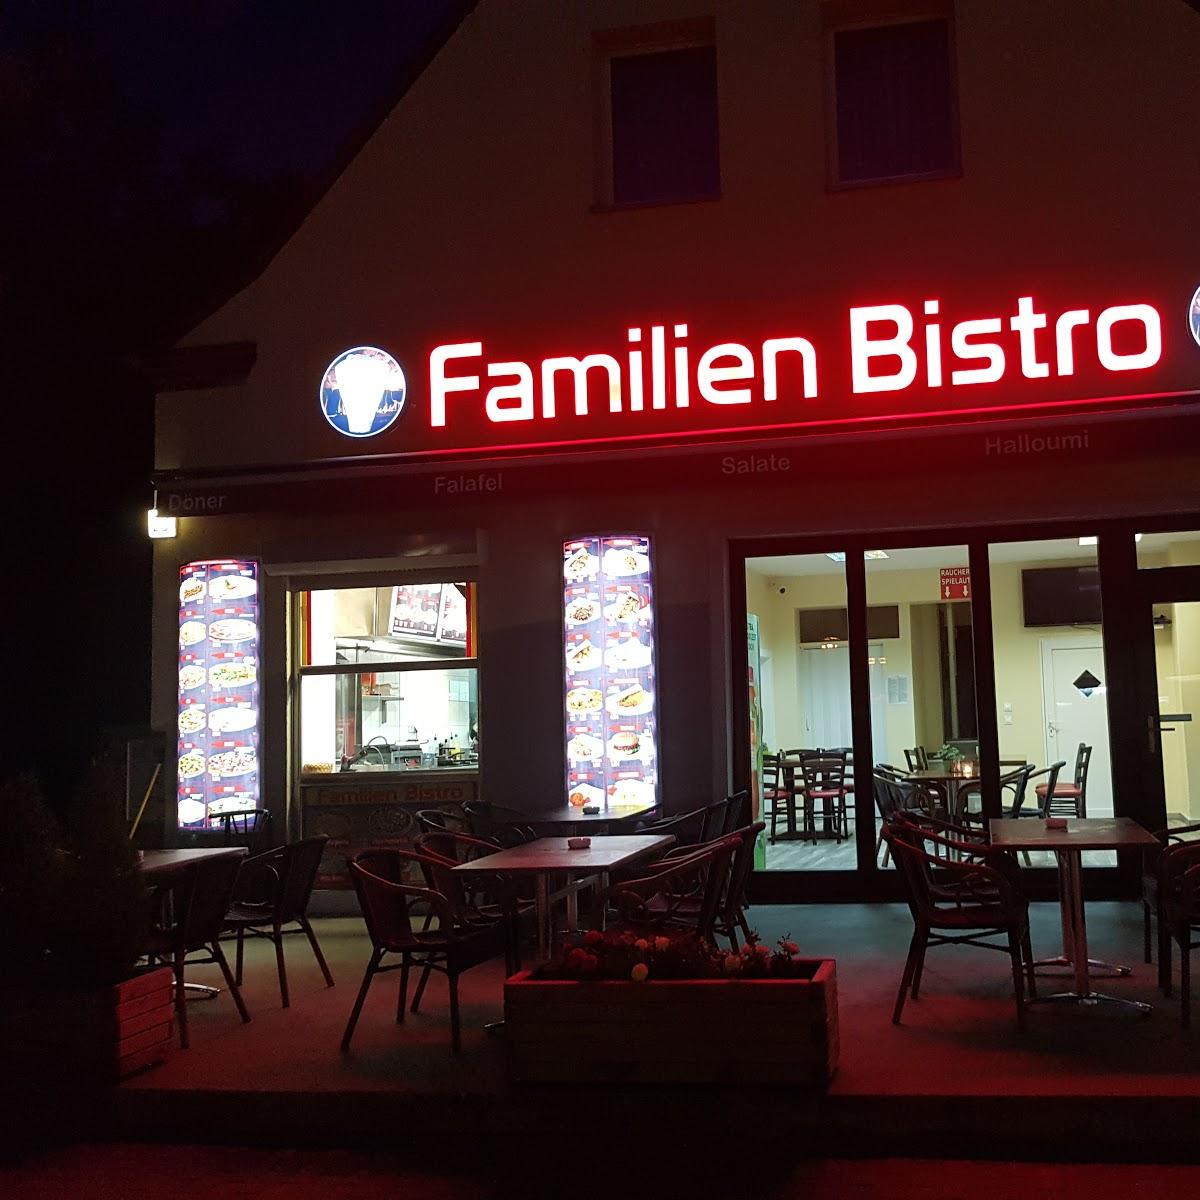 Restaurant "Familien Bistro" in Berlin